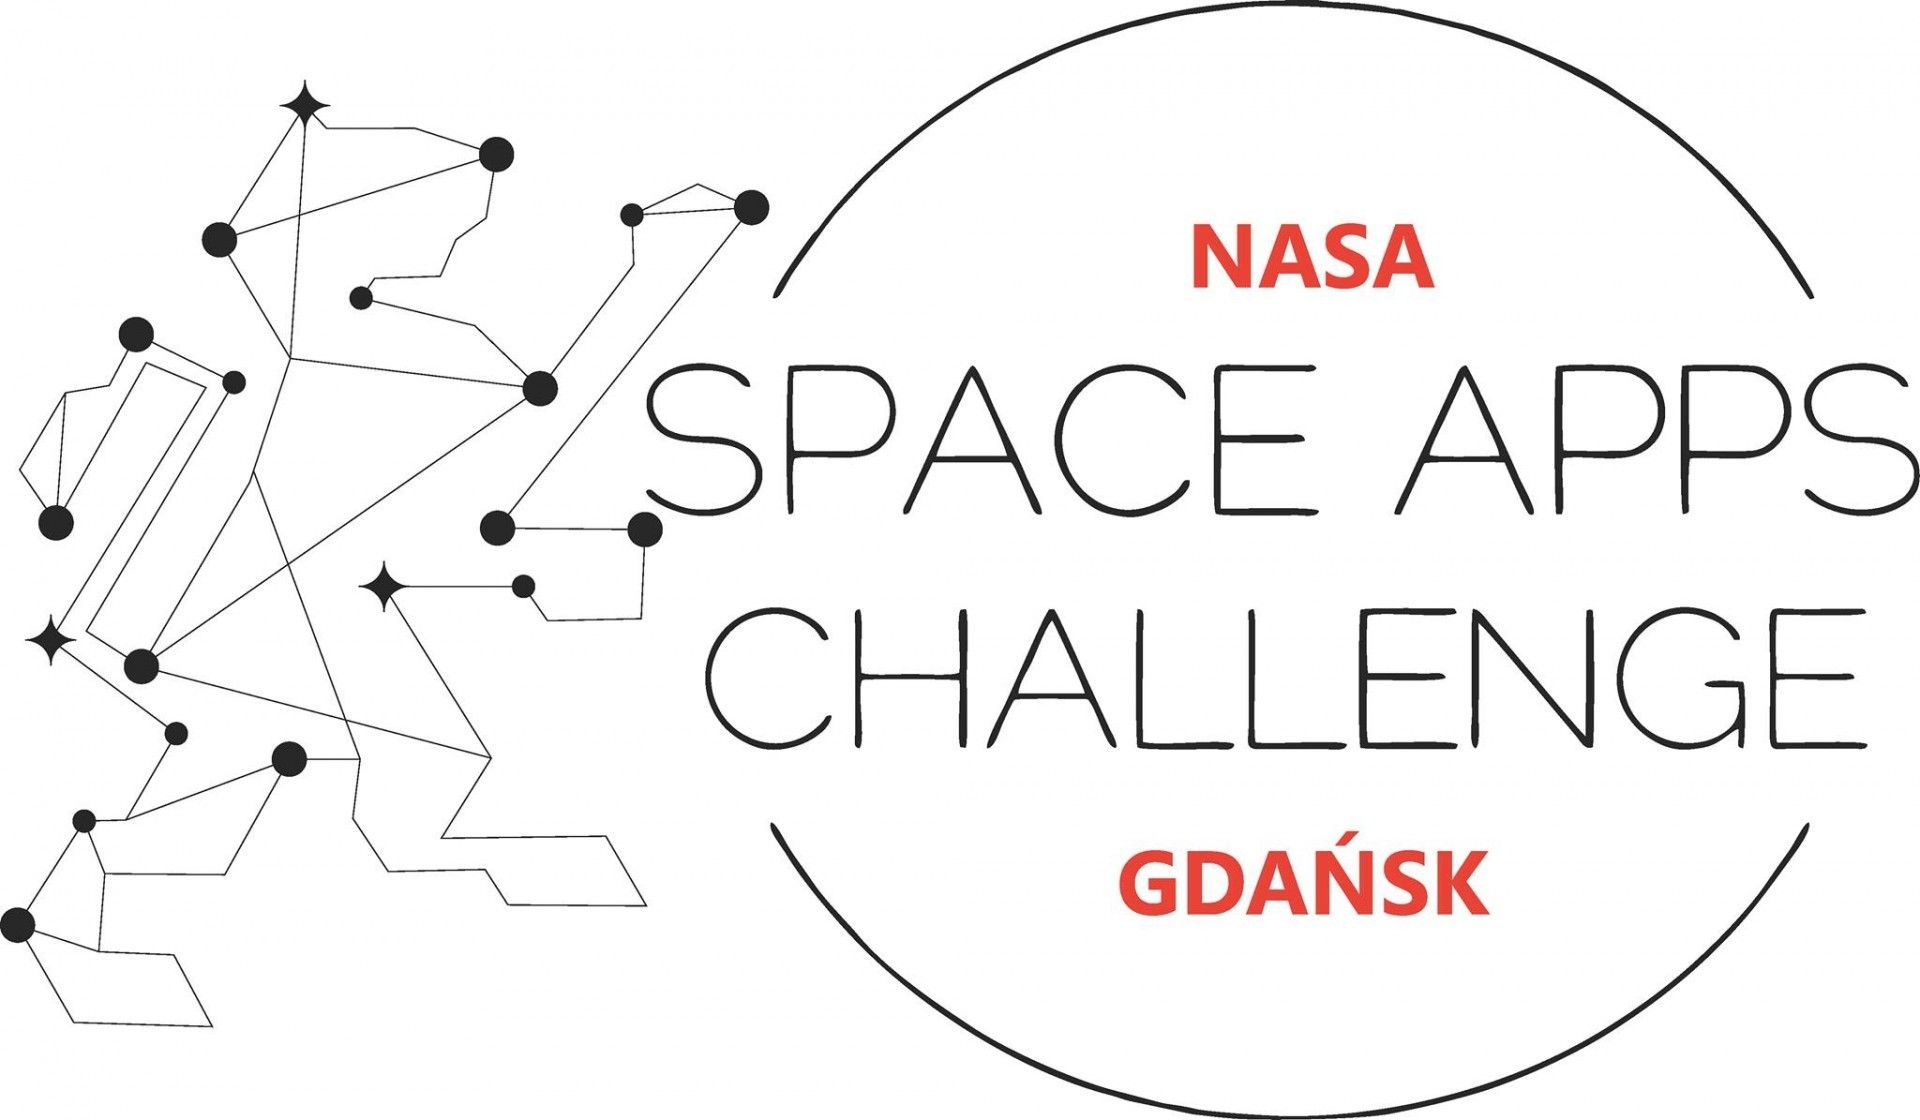 Ilustracja: NASA SpaceApps Challenge Gdańsk via Facebook